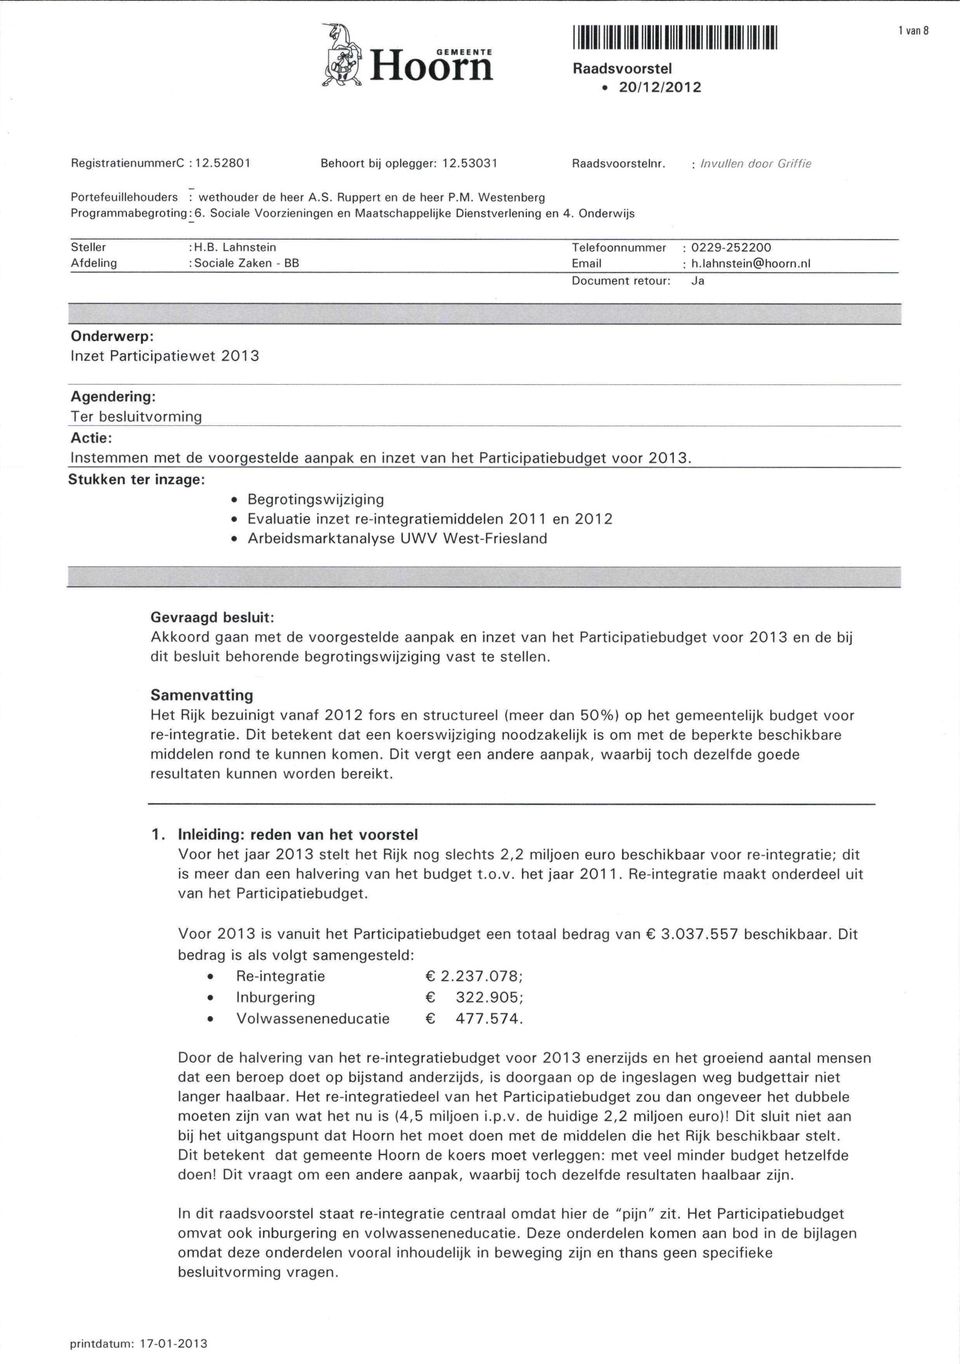 nl Document retour: Ja Onderwerp: Inzet Participatiewet 2013 Agendering: Ter besluitvorming Actie: Instemmen met de voorgestelde aanpak en inzet van het Participatieb udget voor 2013 Stukken ter